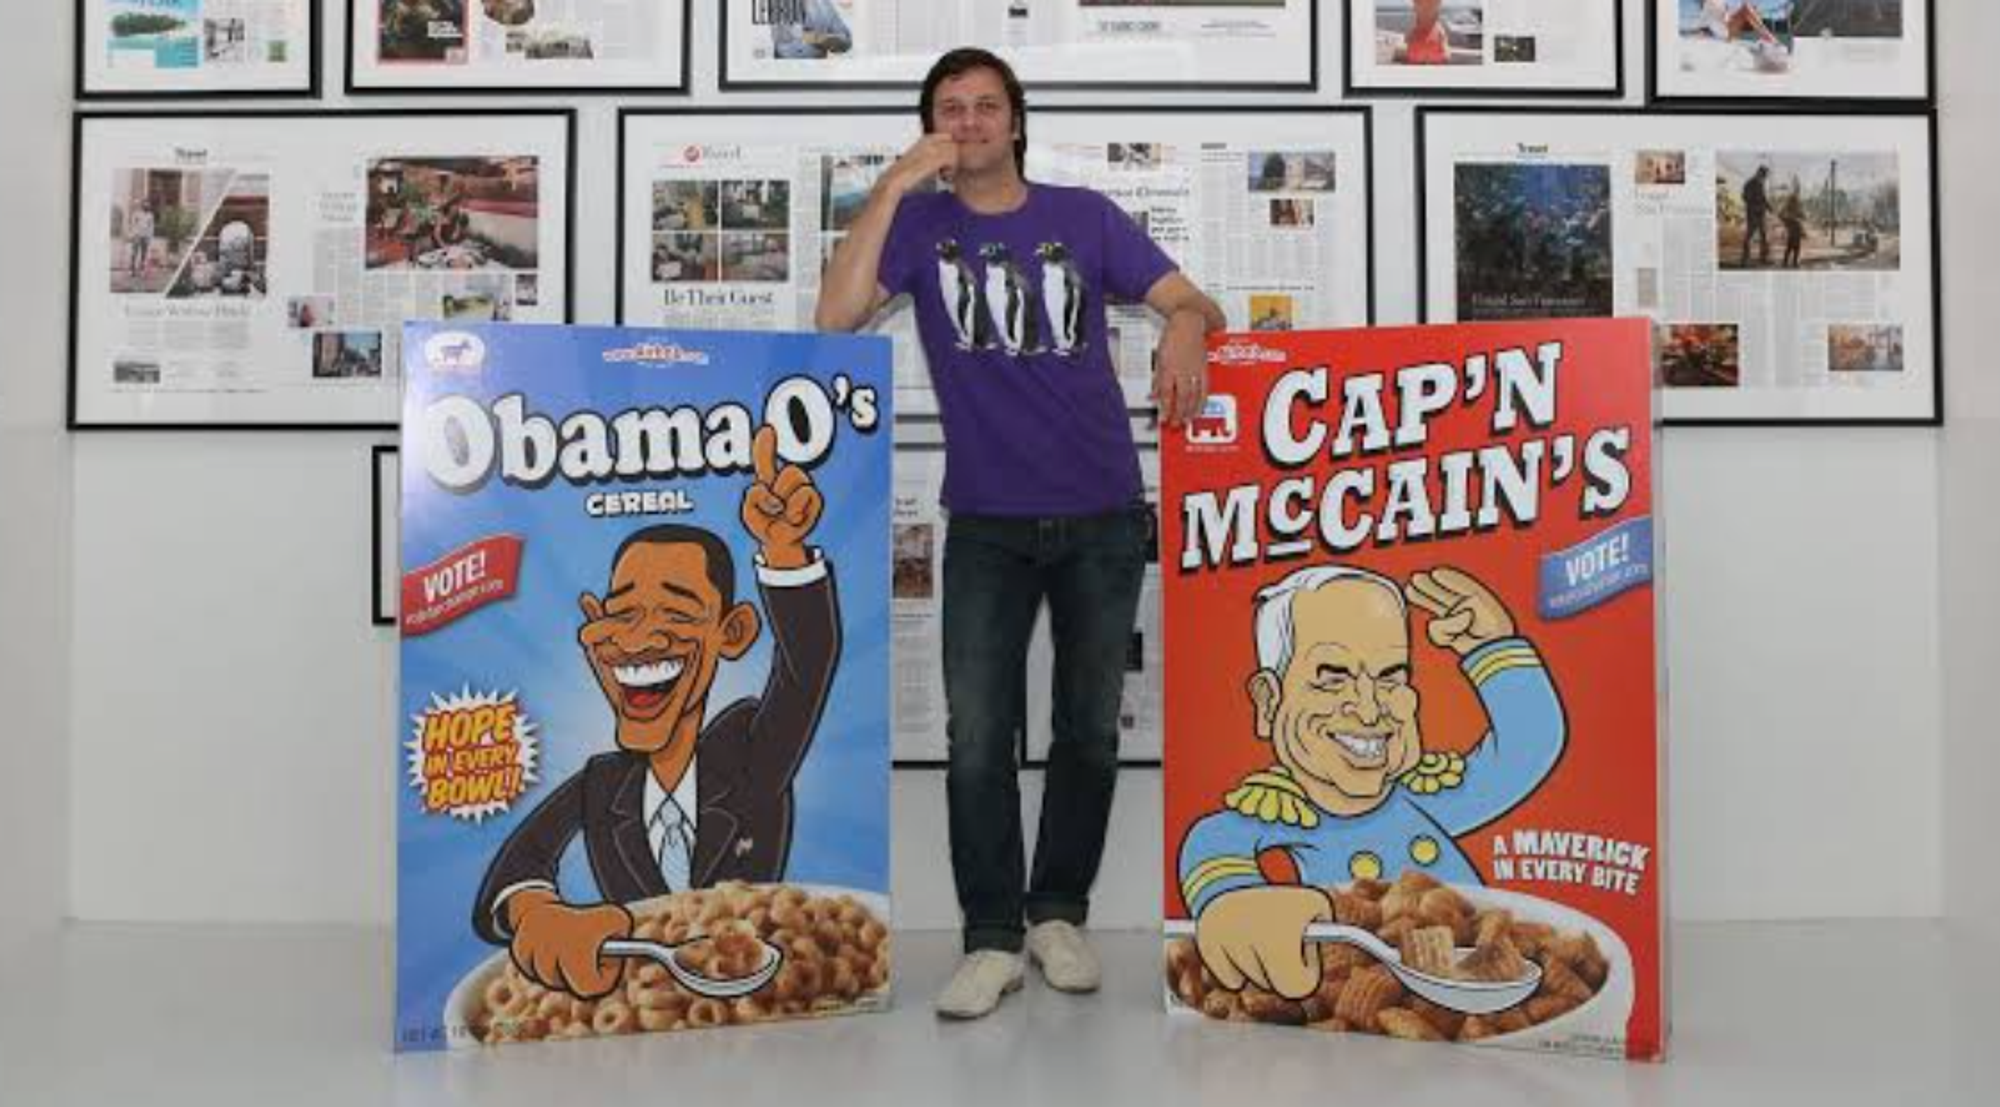 Ze verkochten McCain's & Obama O's cereal voor 40 dollar per pak om Airbnb in leven te houden.